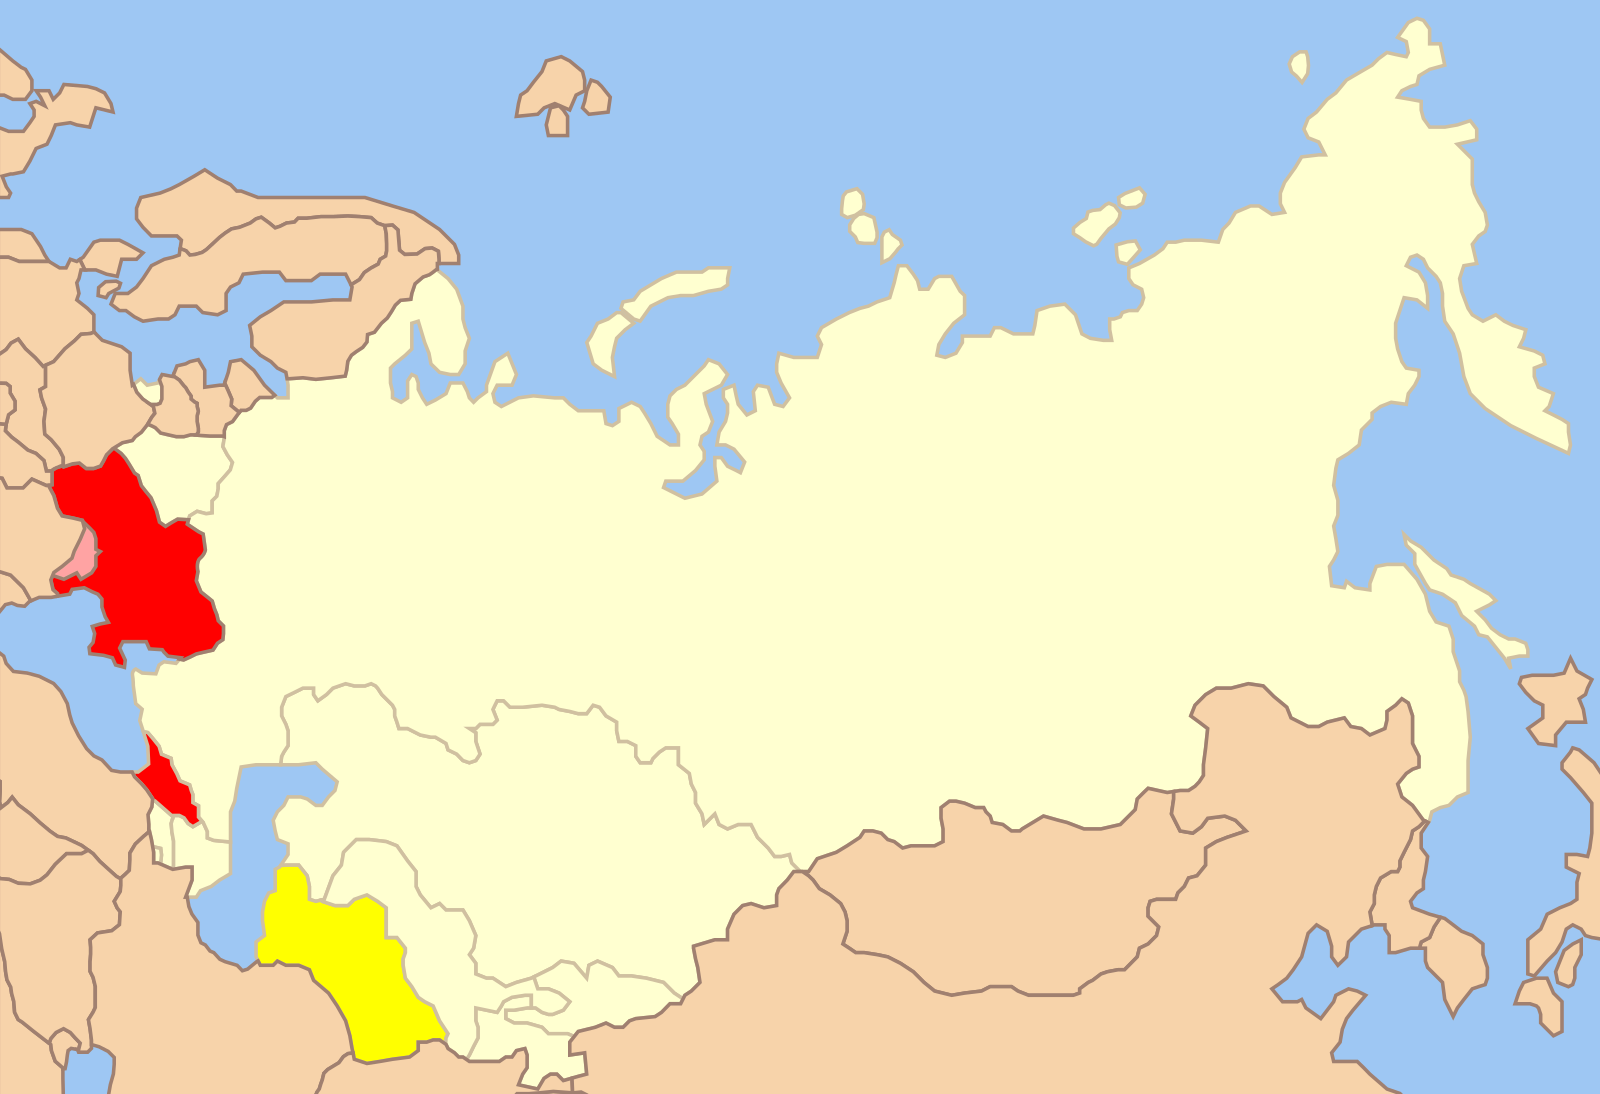 Снг на постсоветском пространстве. Страны СНГ на карте. Карта постсоветского пространства. Государства постсоветского пространства. Контурная карта постсоветского пространства.